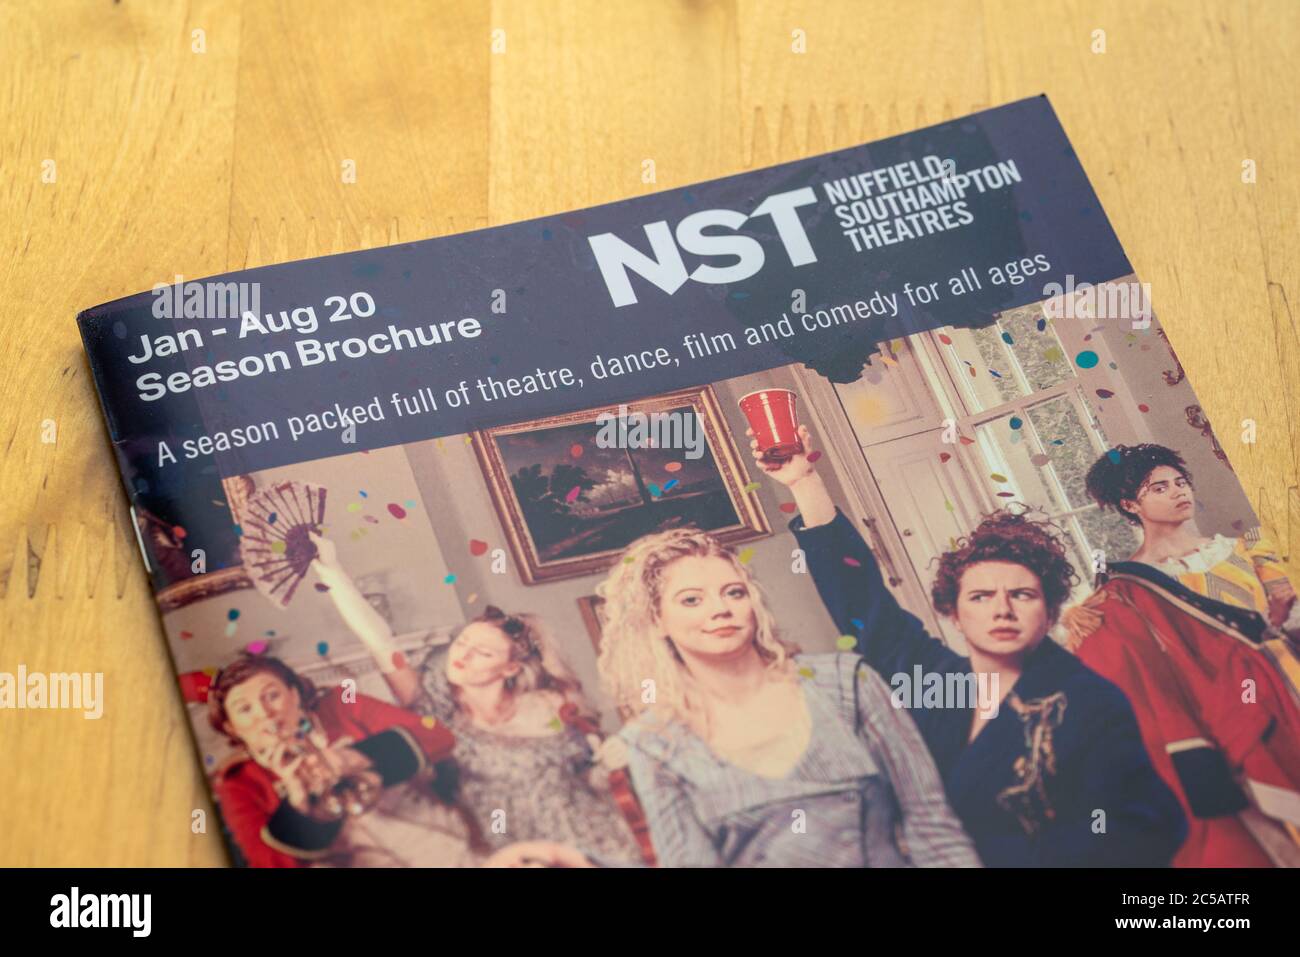 Jan - Aug 20 Brochure della stagione dei teatri di Southampton di Nuffield (NST) - la compagnia teatrale è recentemente entrata in amministrazione grazie a COVID 19 Foto Stock